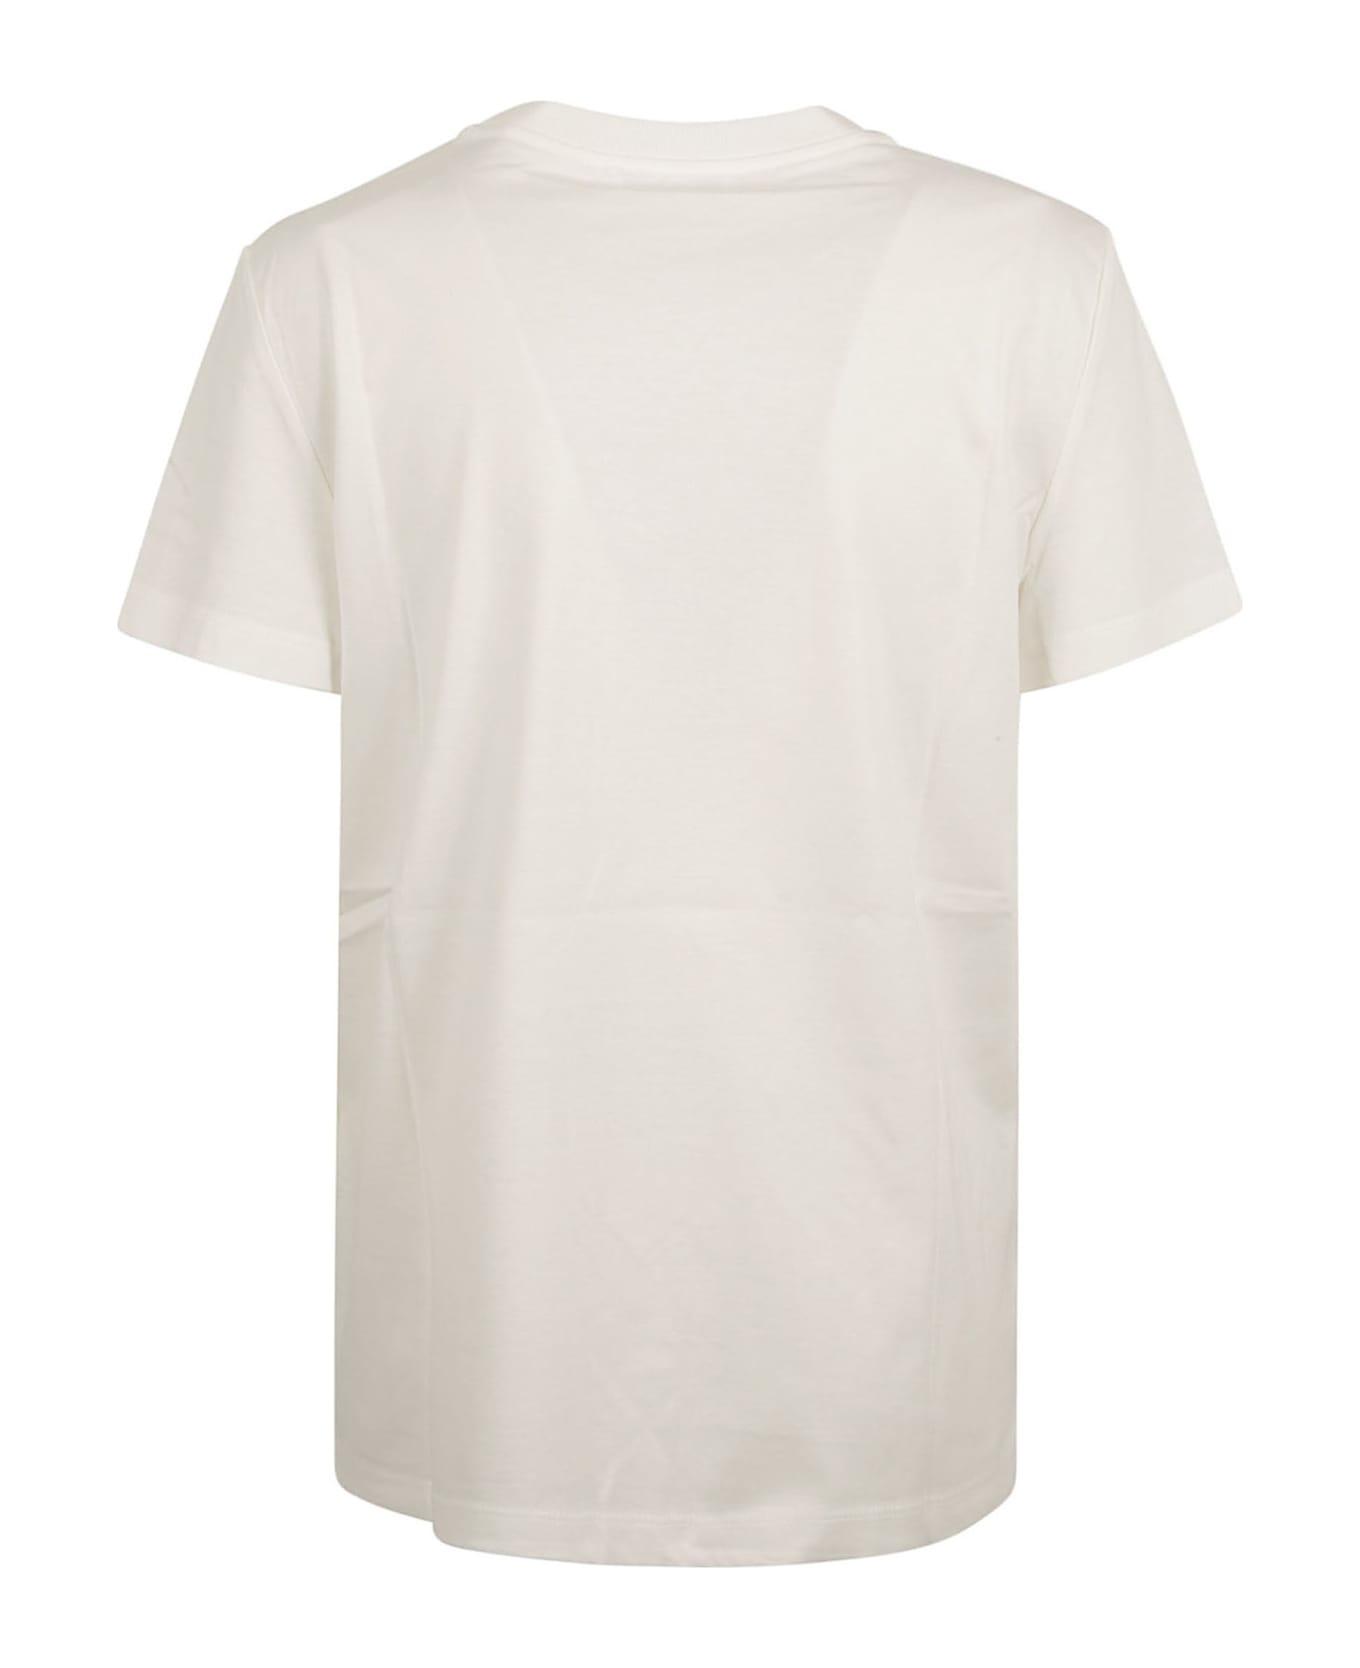 Max Mara Elmo Pocket T-shirt - White